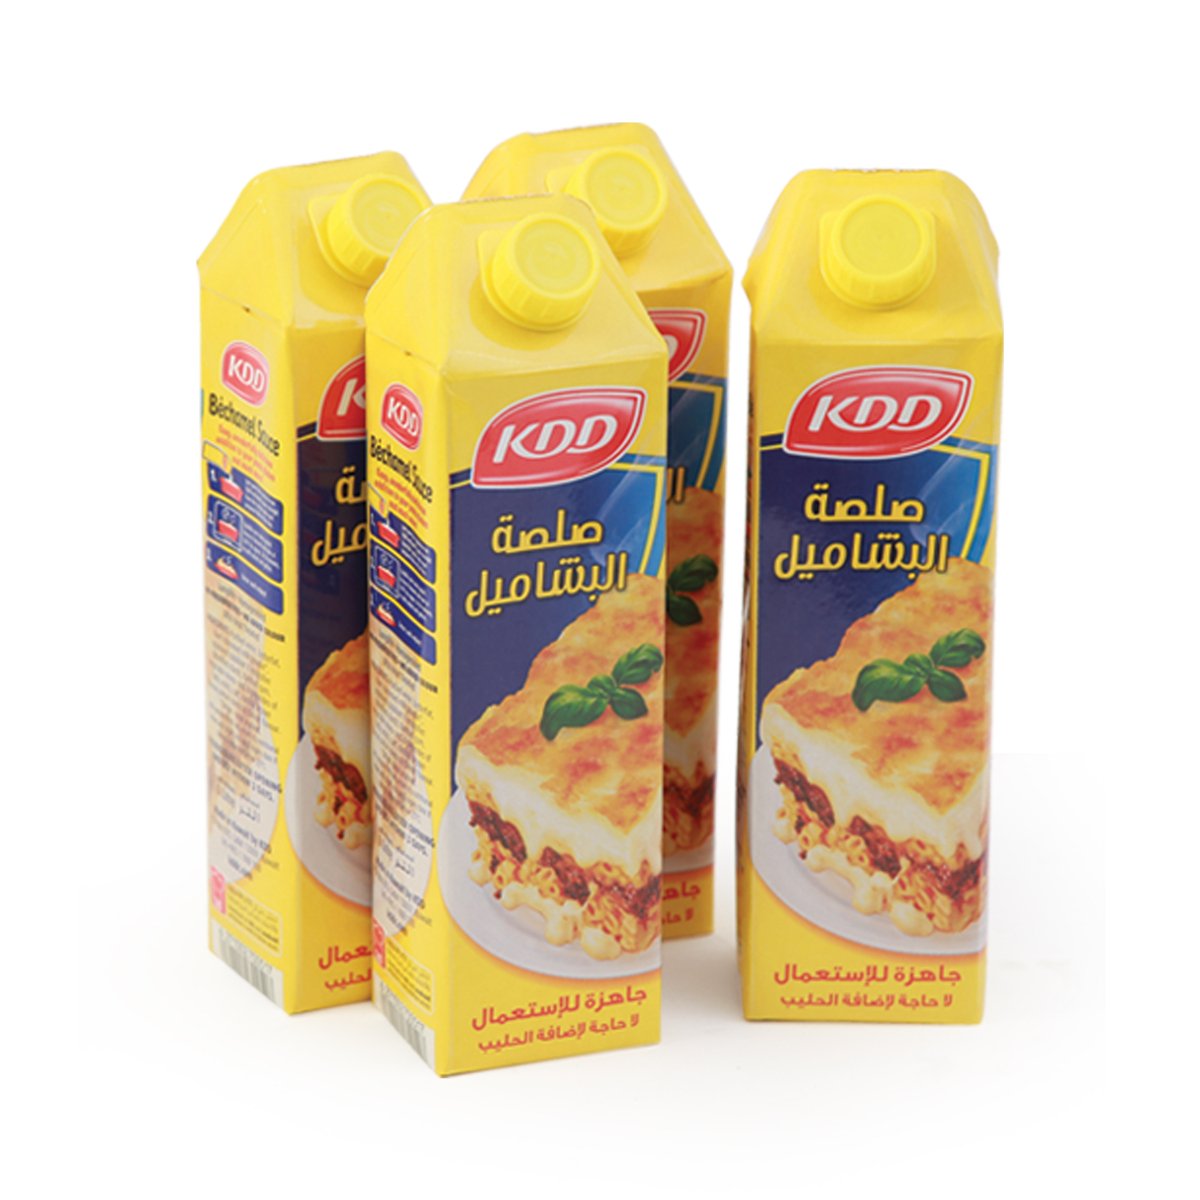 KDD Bechamel Sauce Value Pack 4 x 1Litre